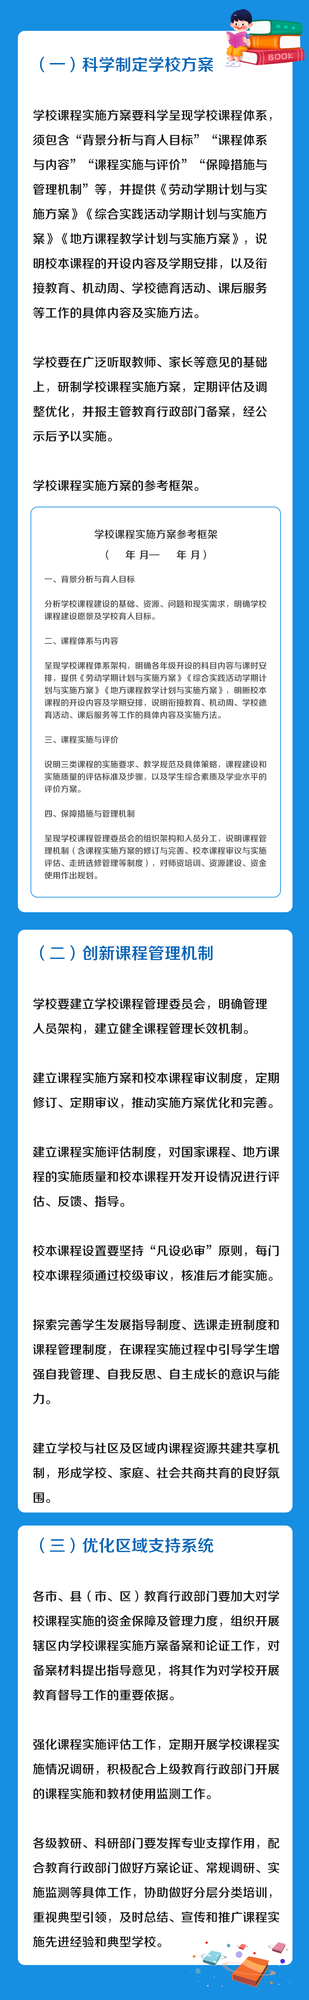 《浙江省义务教育学校课程建设指导意见》发布